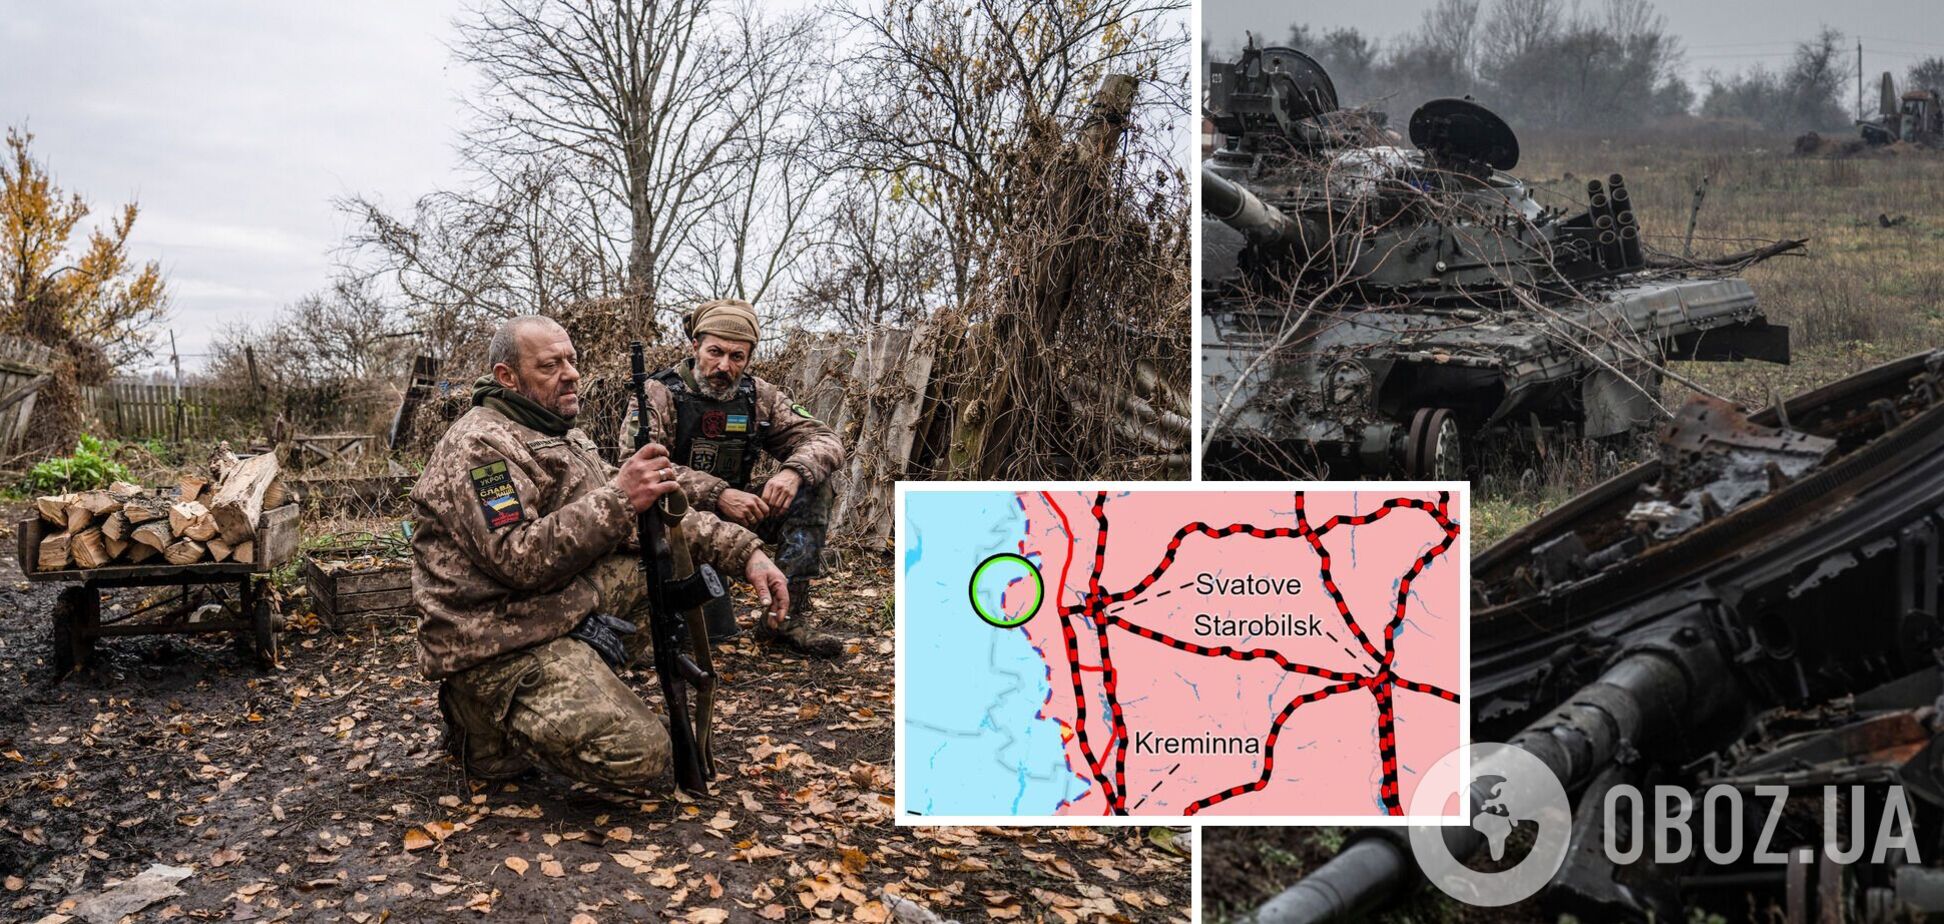 Войска РФ проводят контратаки около Сватово, а ВСУ атакуют врага возле Кременной: анализ боевых действий от ISW